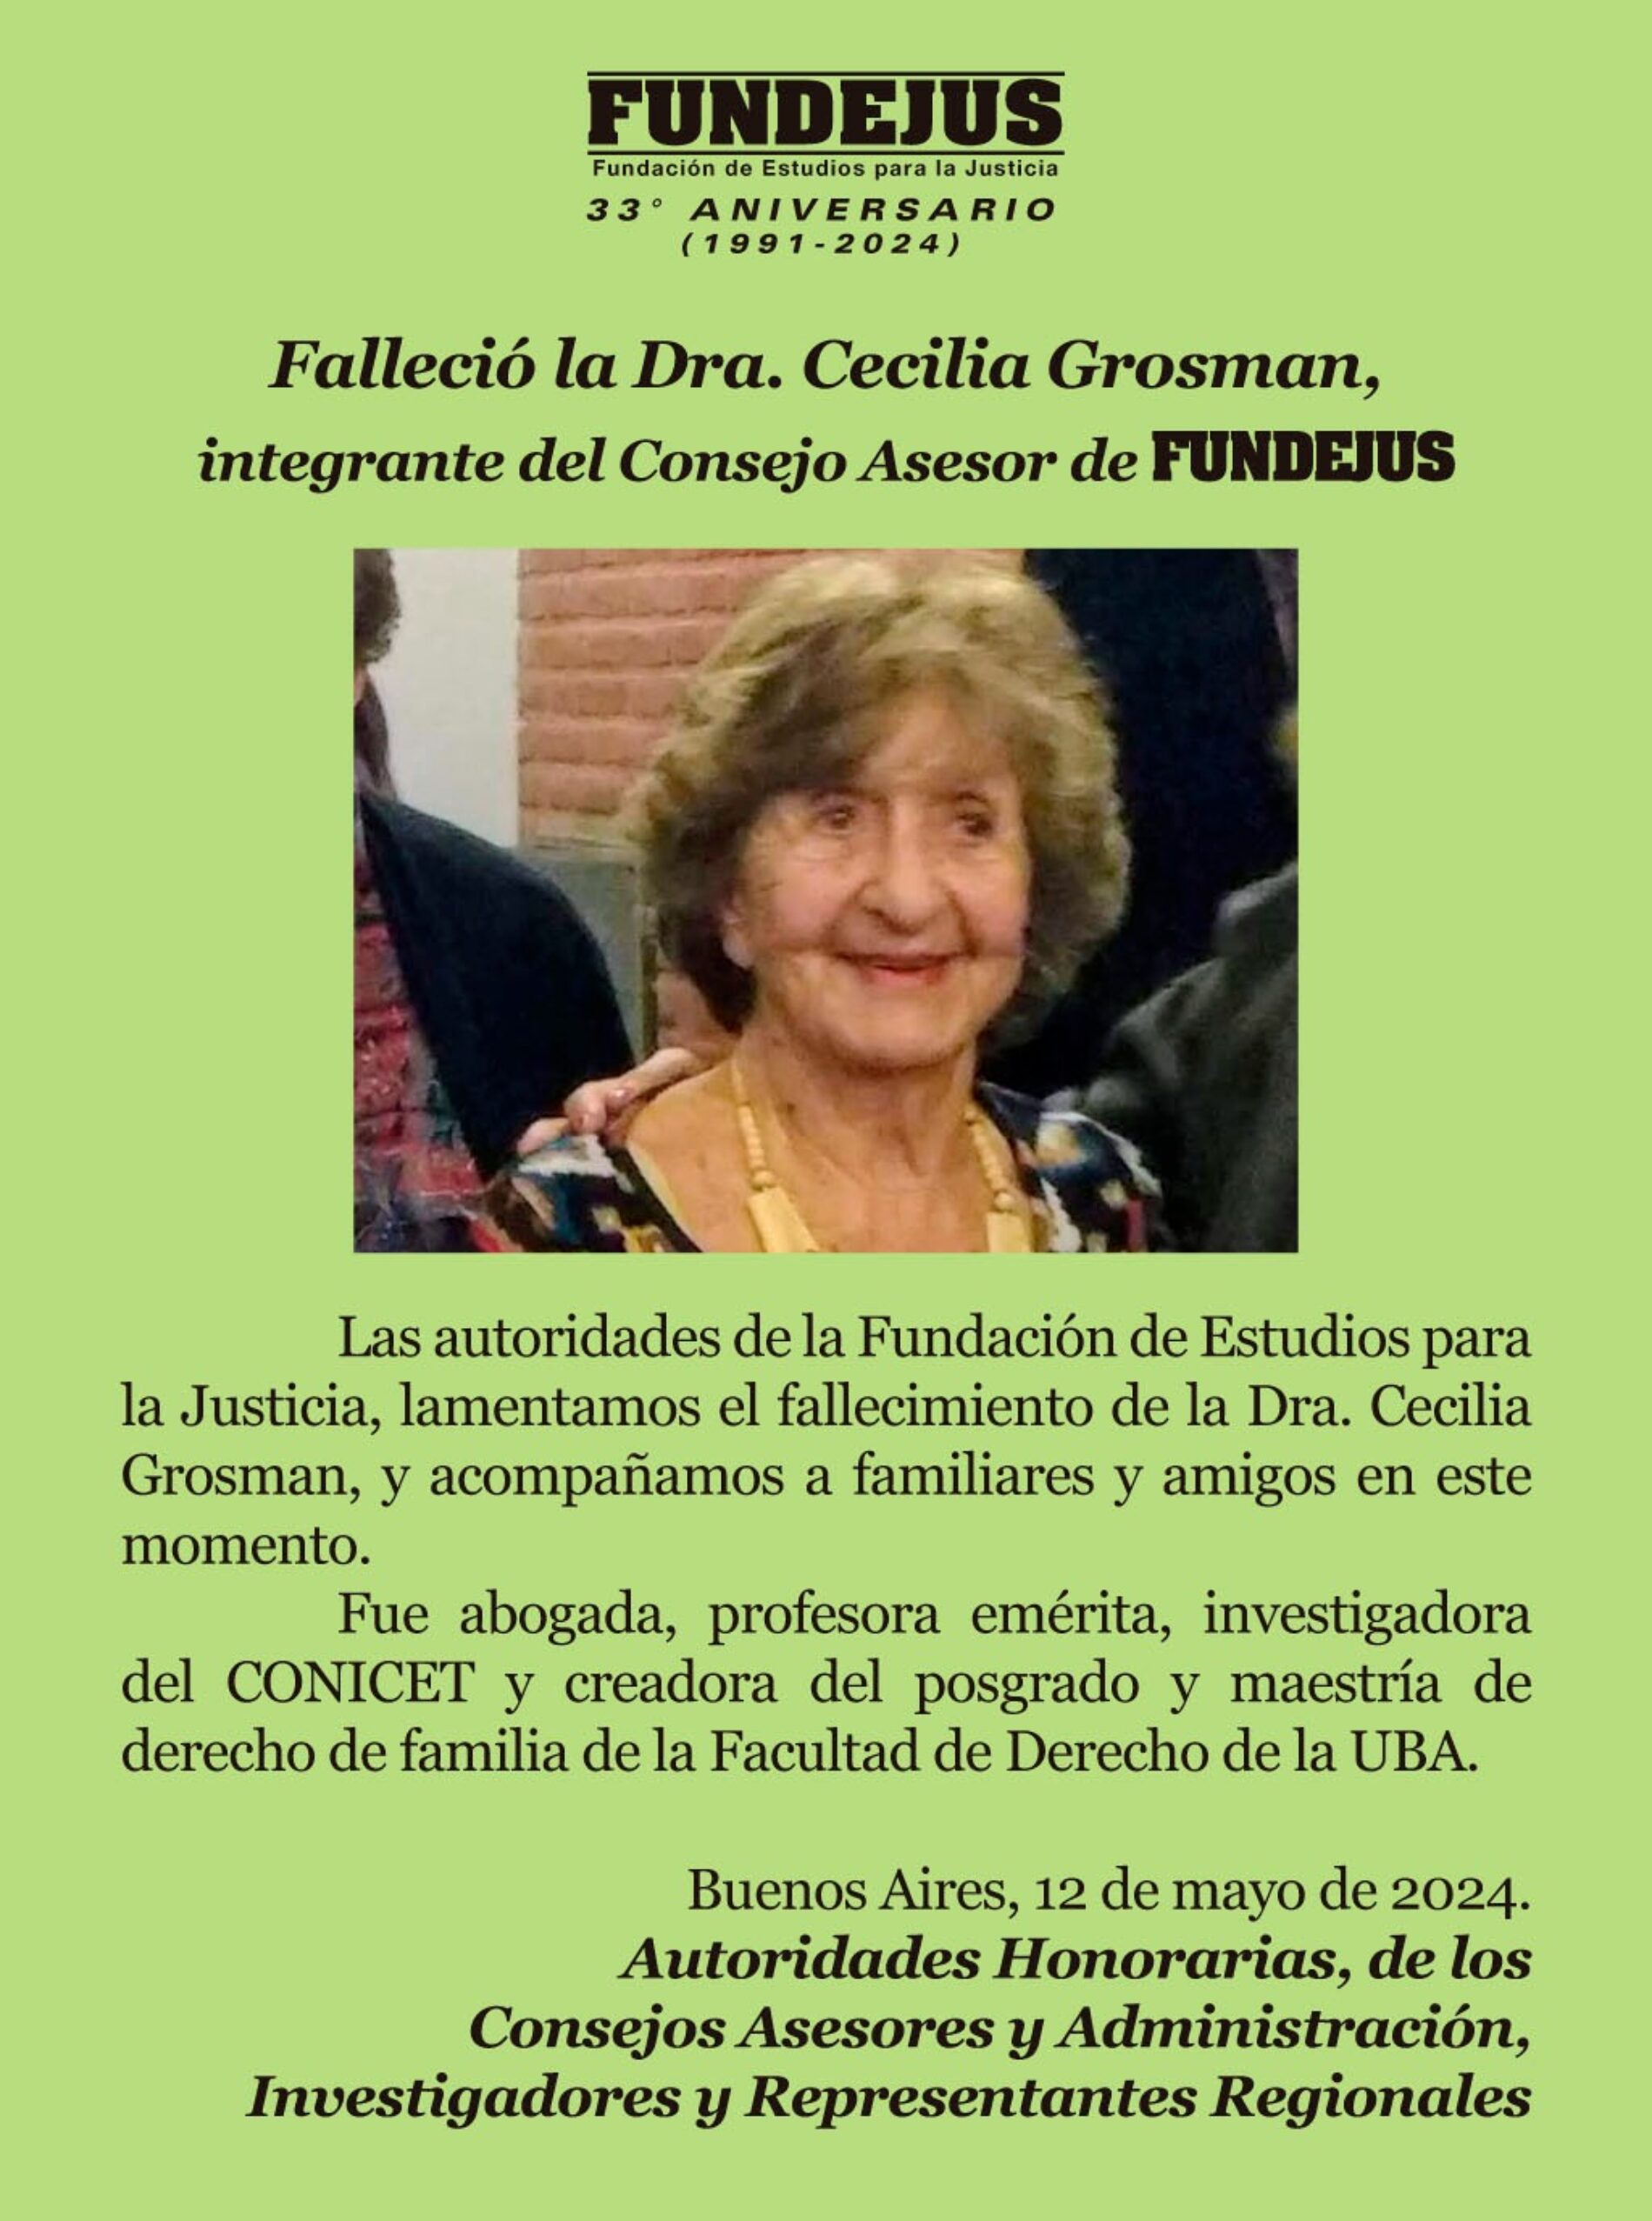 FUNDEJUS difunde: “Falleció la Dra. Cecilia Grosman, integrante del Consejo Asesor de FUNDEJUS.”